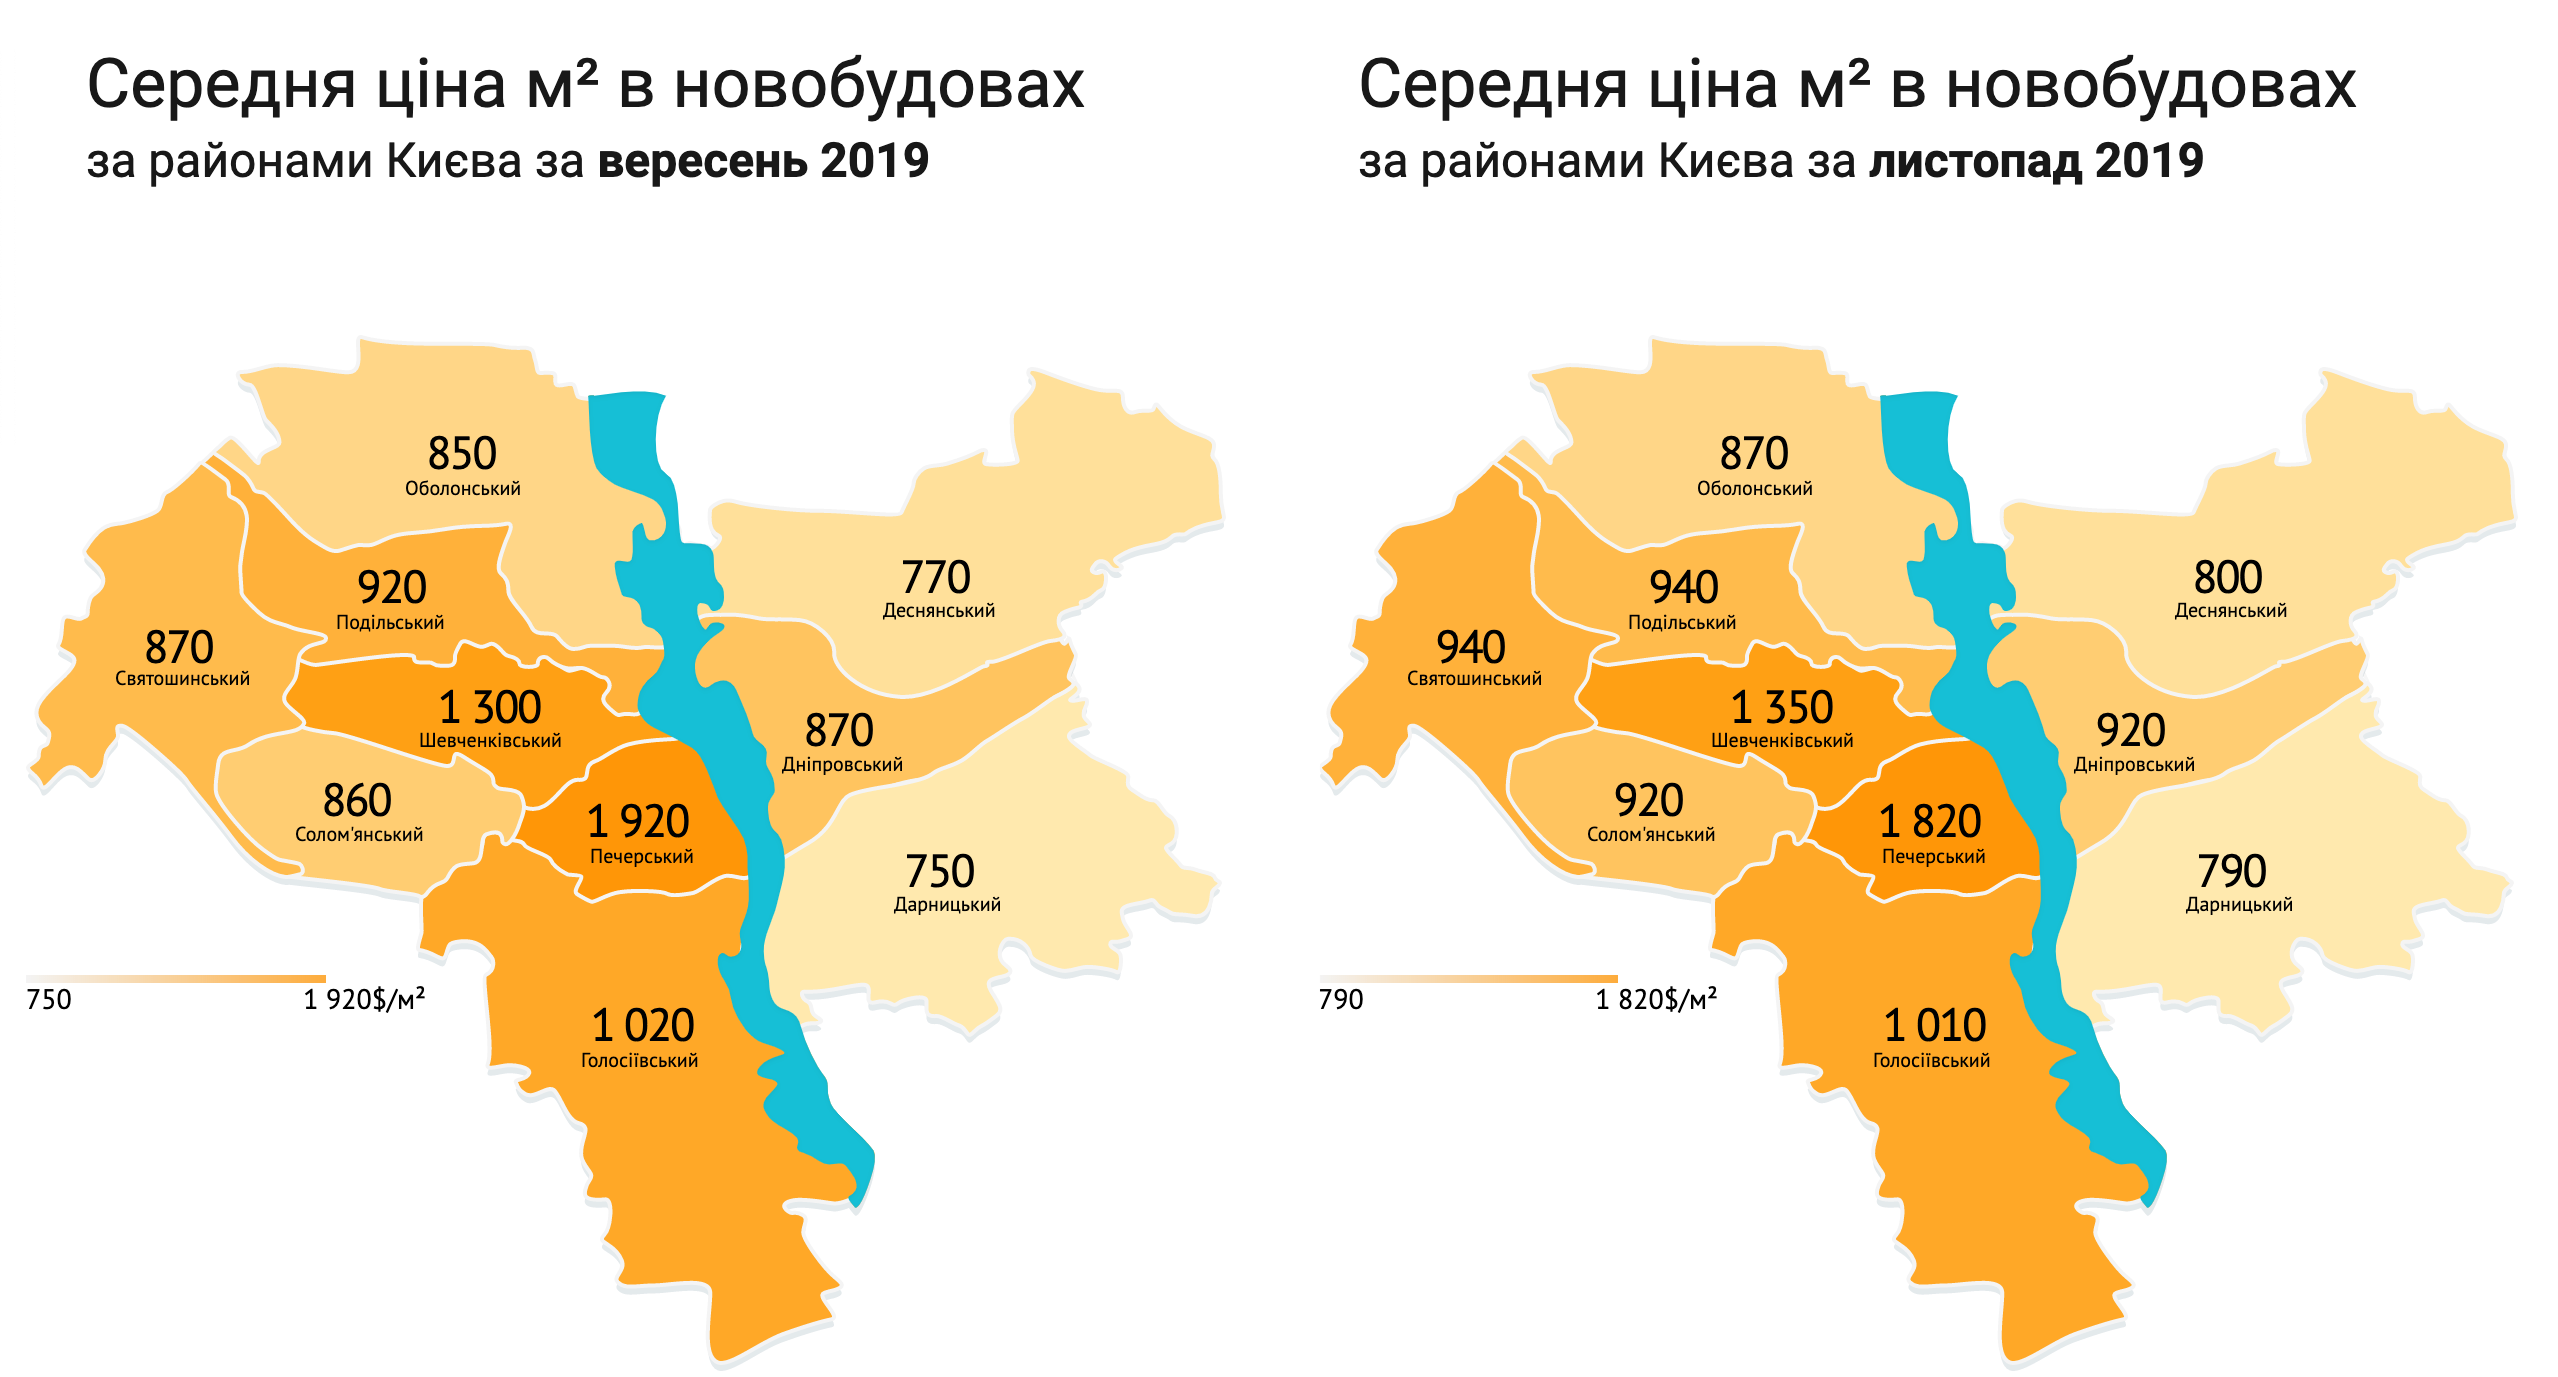 Анализ рынка недвижимости осени 2019 года динамика цен на квартиры по районам Киева